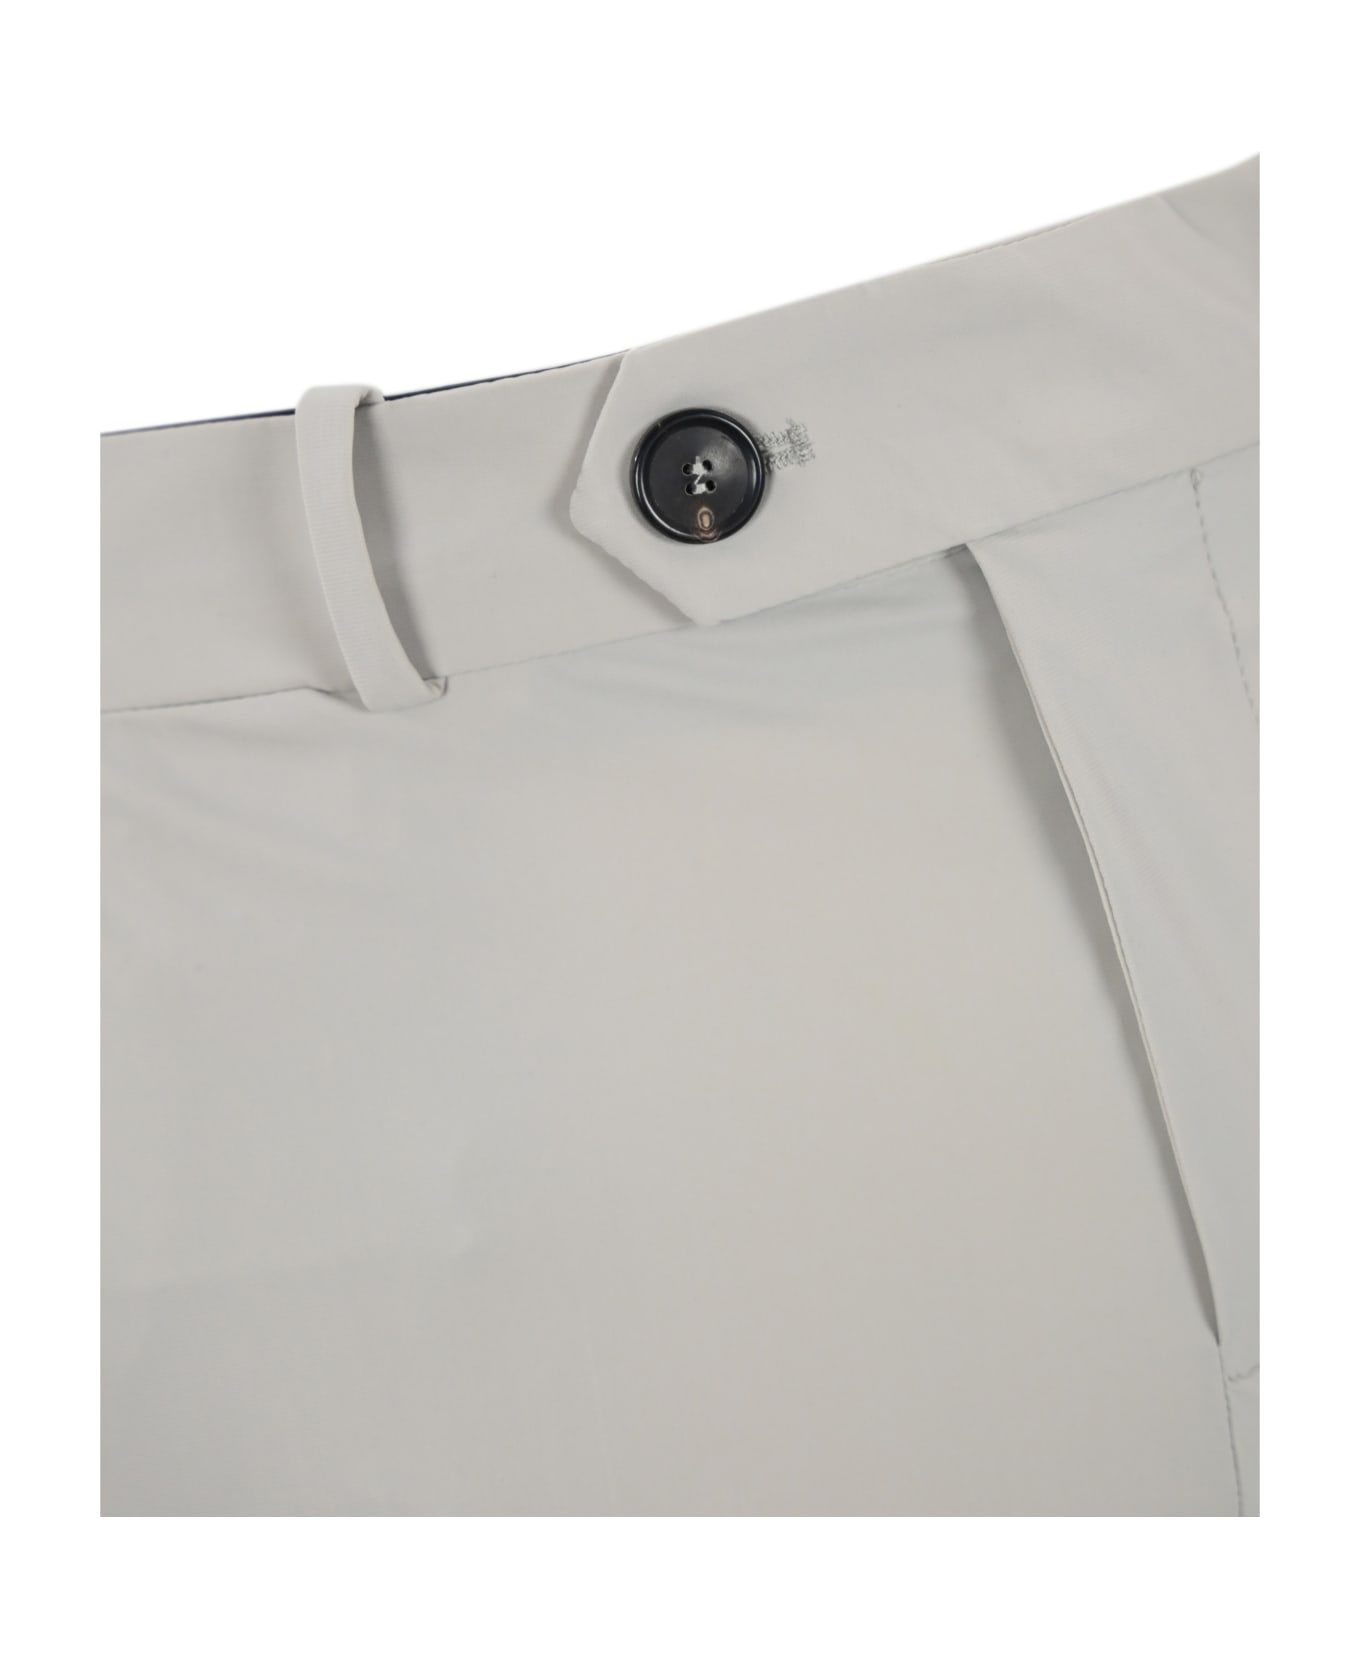 RRD - Roberto Ricci Design Chino Trousers In Technical Fabric - White sand